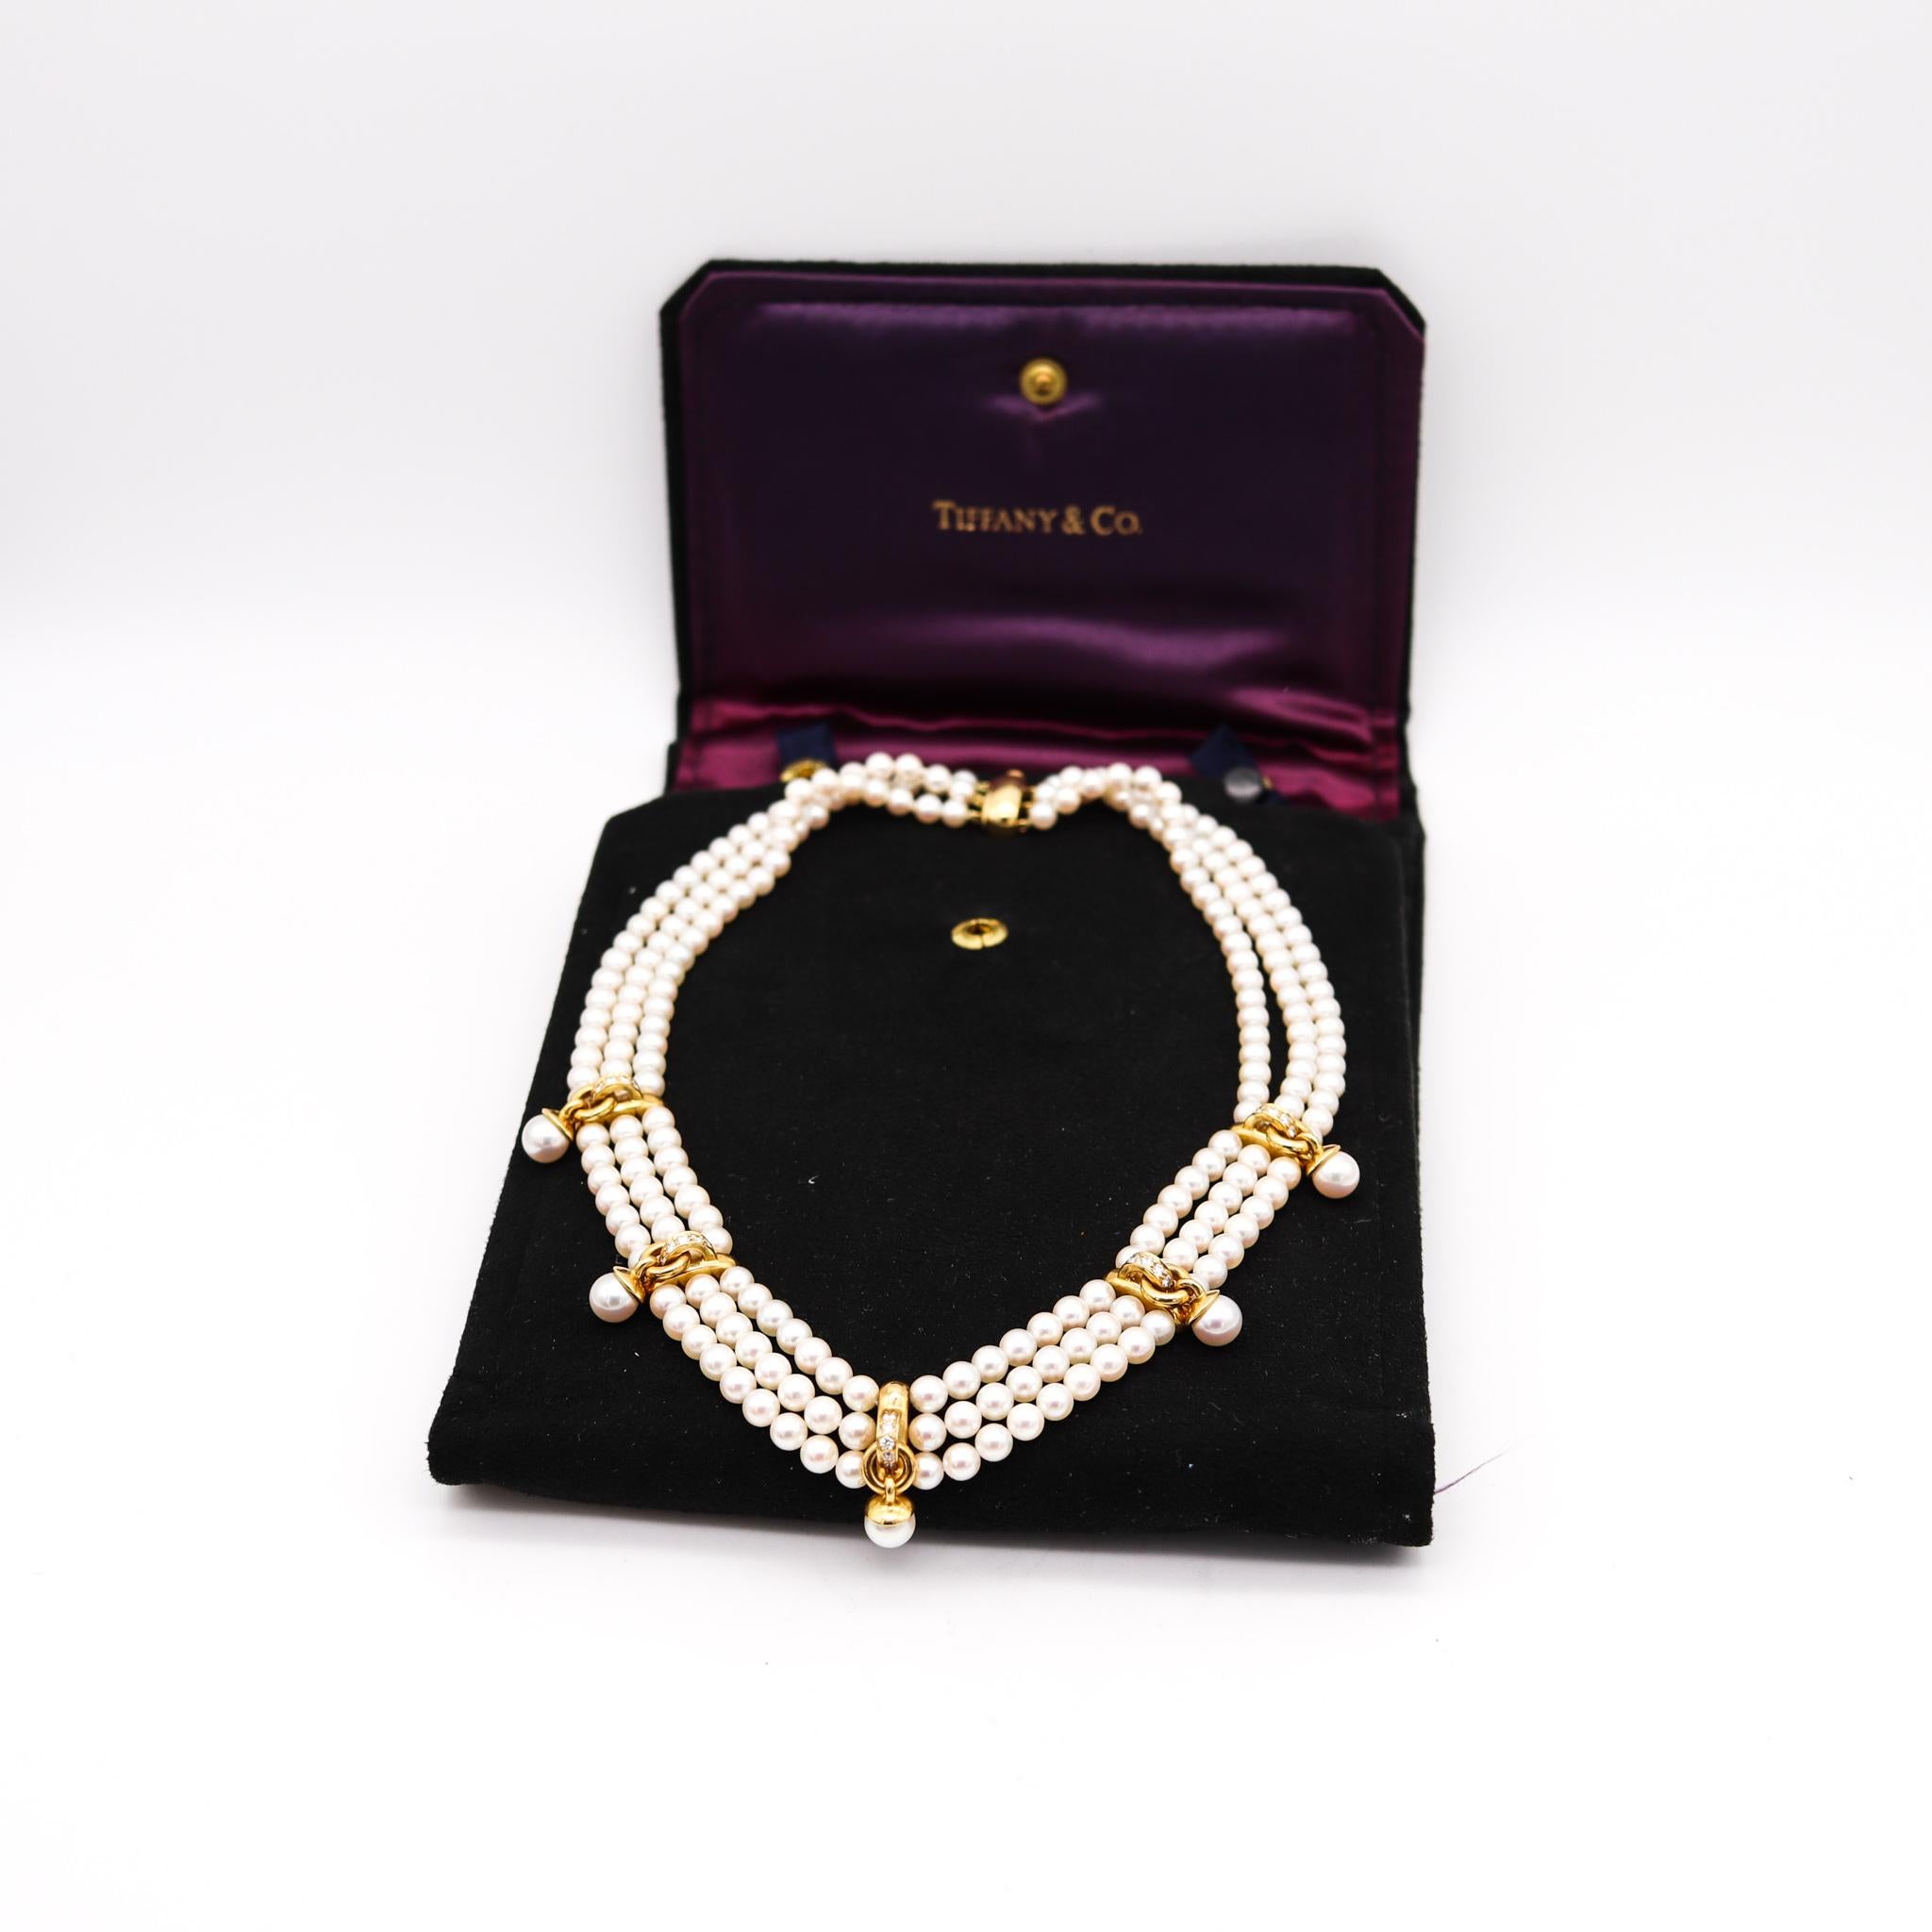 Collier de perles conçu par Tiffany & Co.

Exceptionnel collier classique, créé à New York dans les studios Tiffany, à la fin du 20e siècle. Ce collier est composé de trois rangs de perles de 5 mm montées sur cinq intercalaires en or jaune massif de